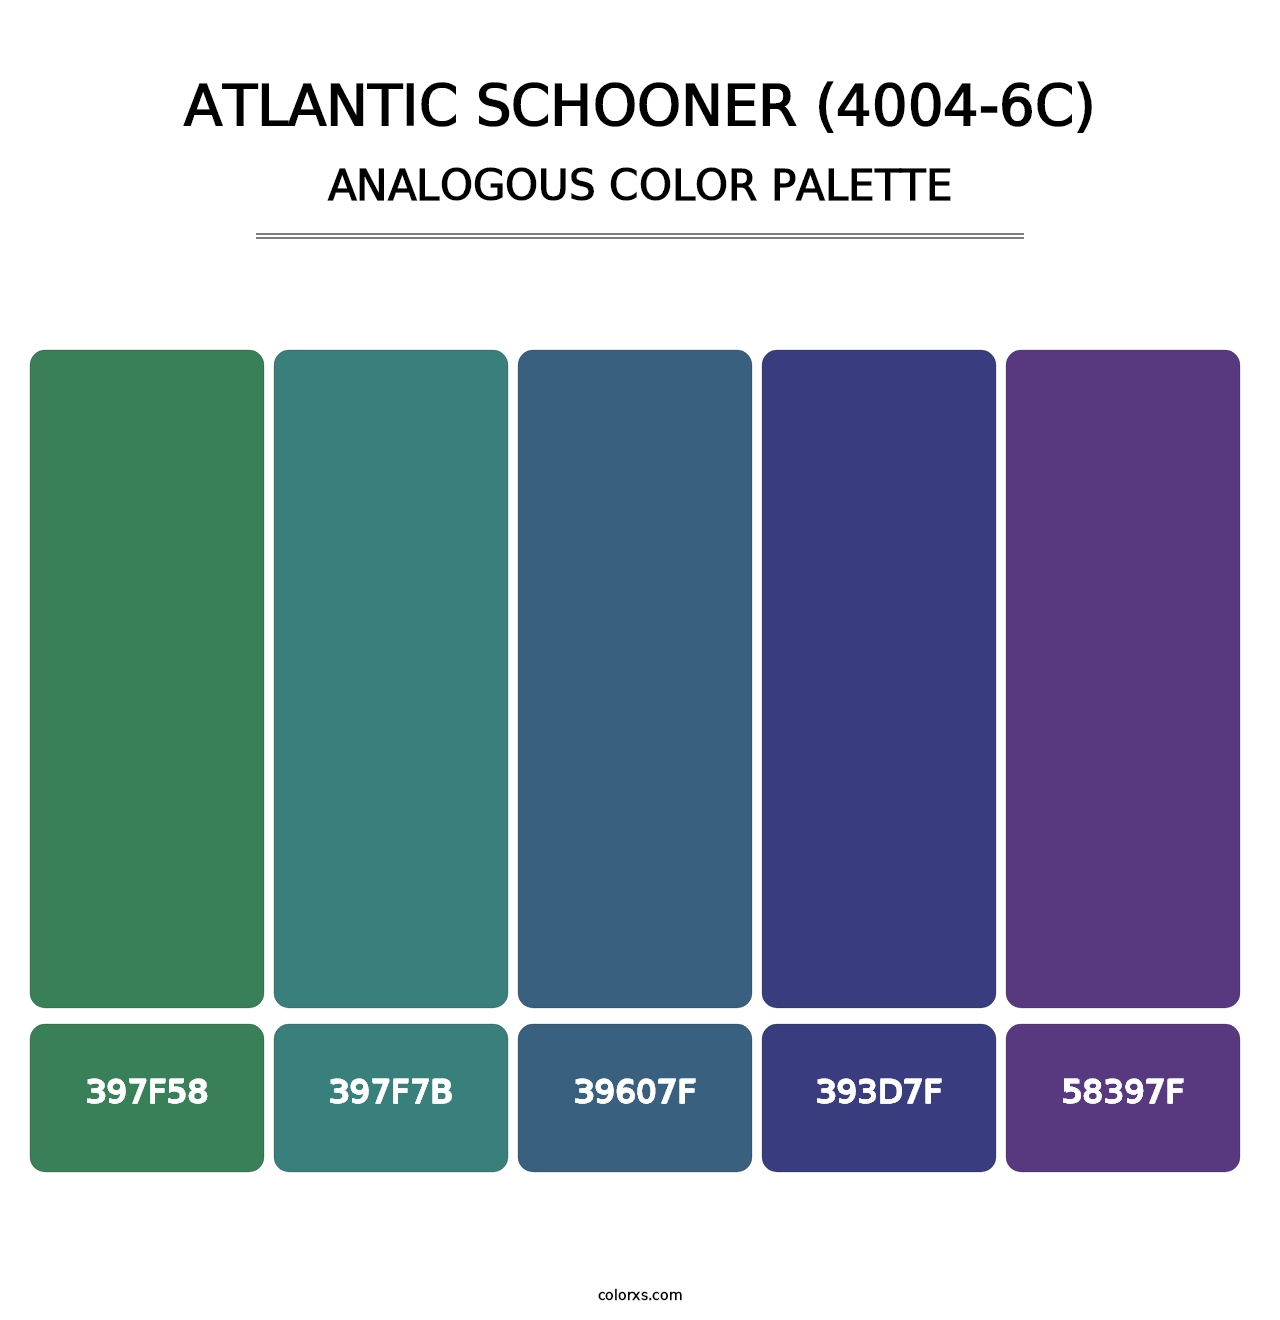 Atlantic Schooner (4004-6C) - Analogous Color Palette